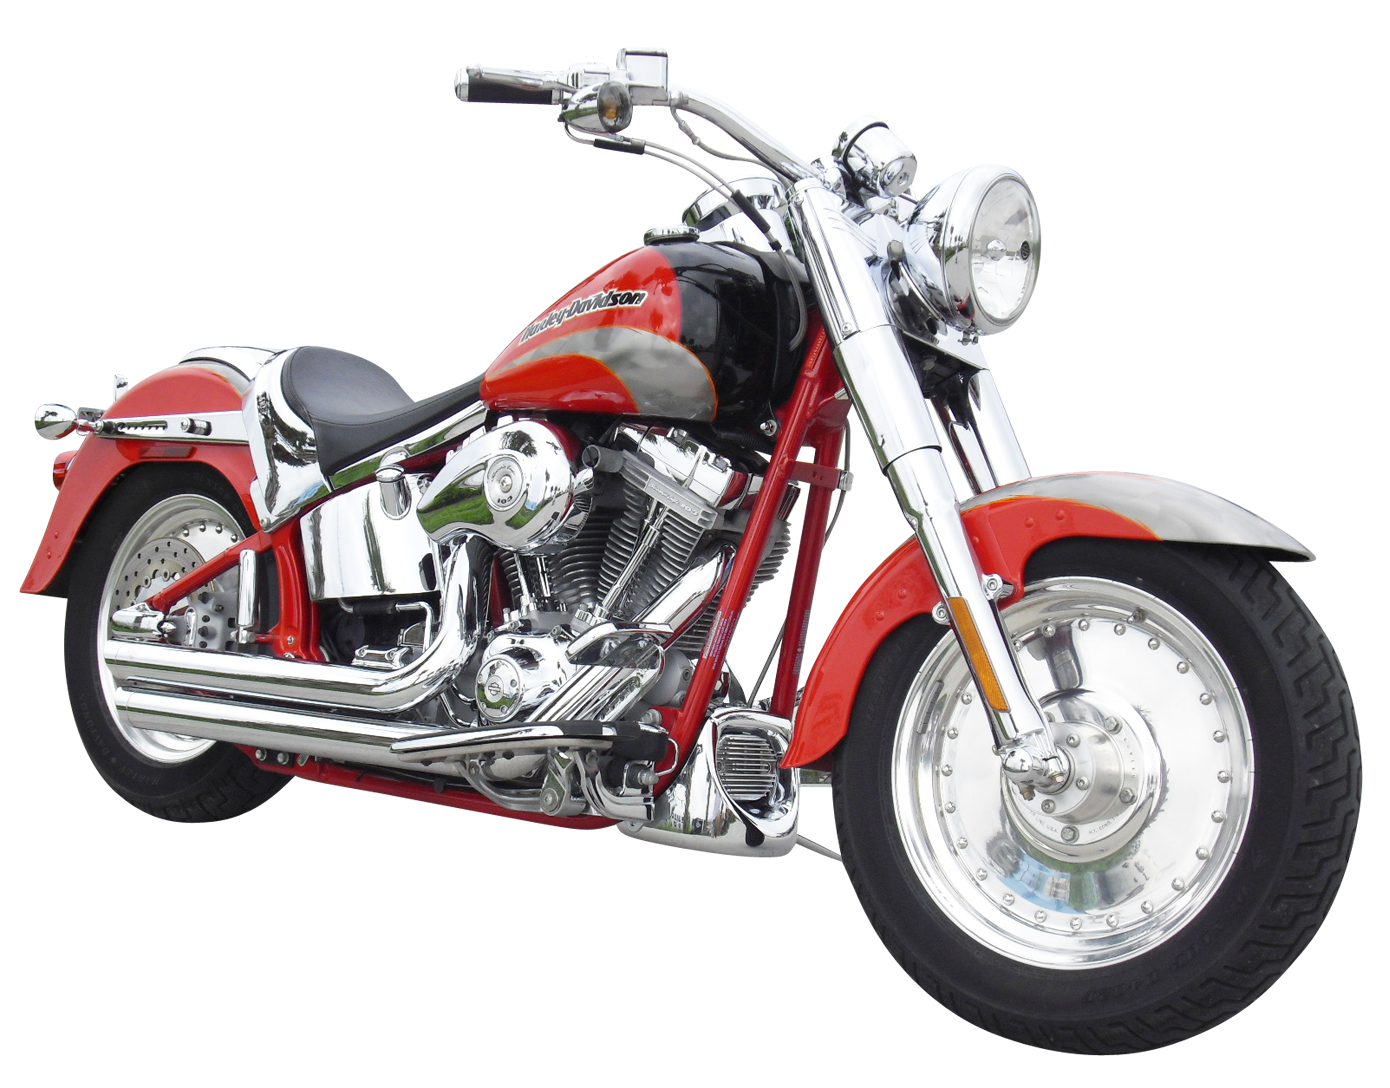 Redand Black Harley Davidson Motorcycle PNG image